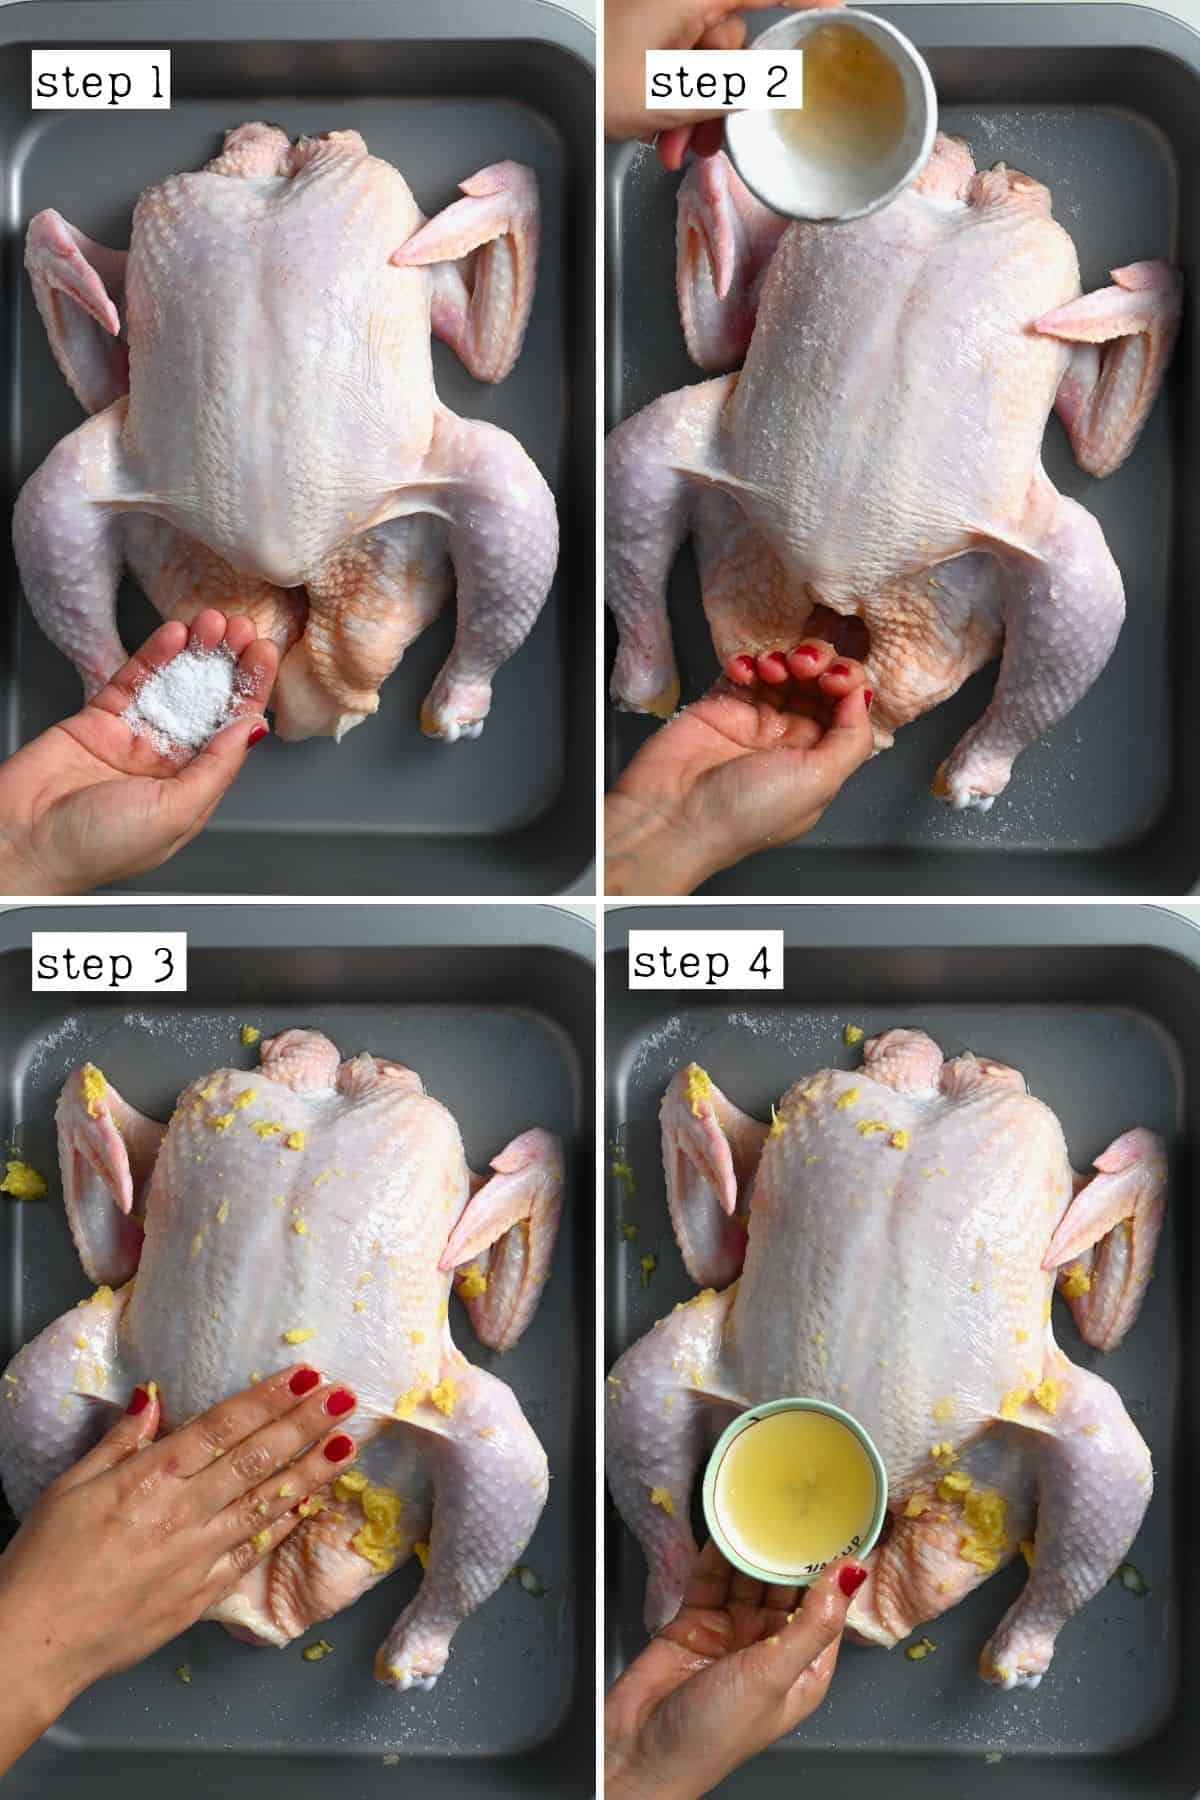 Steps for preparing chicken for roasting